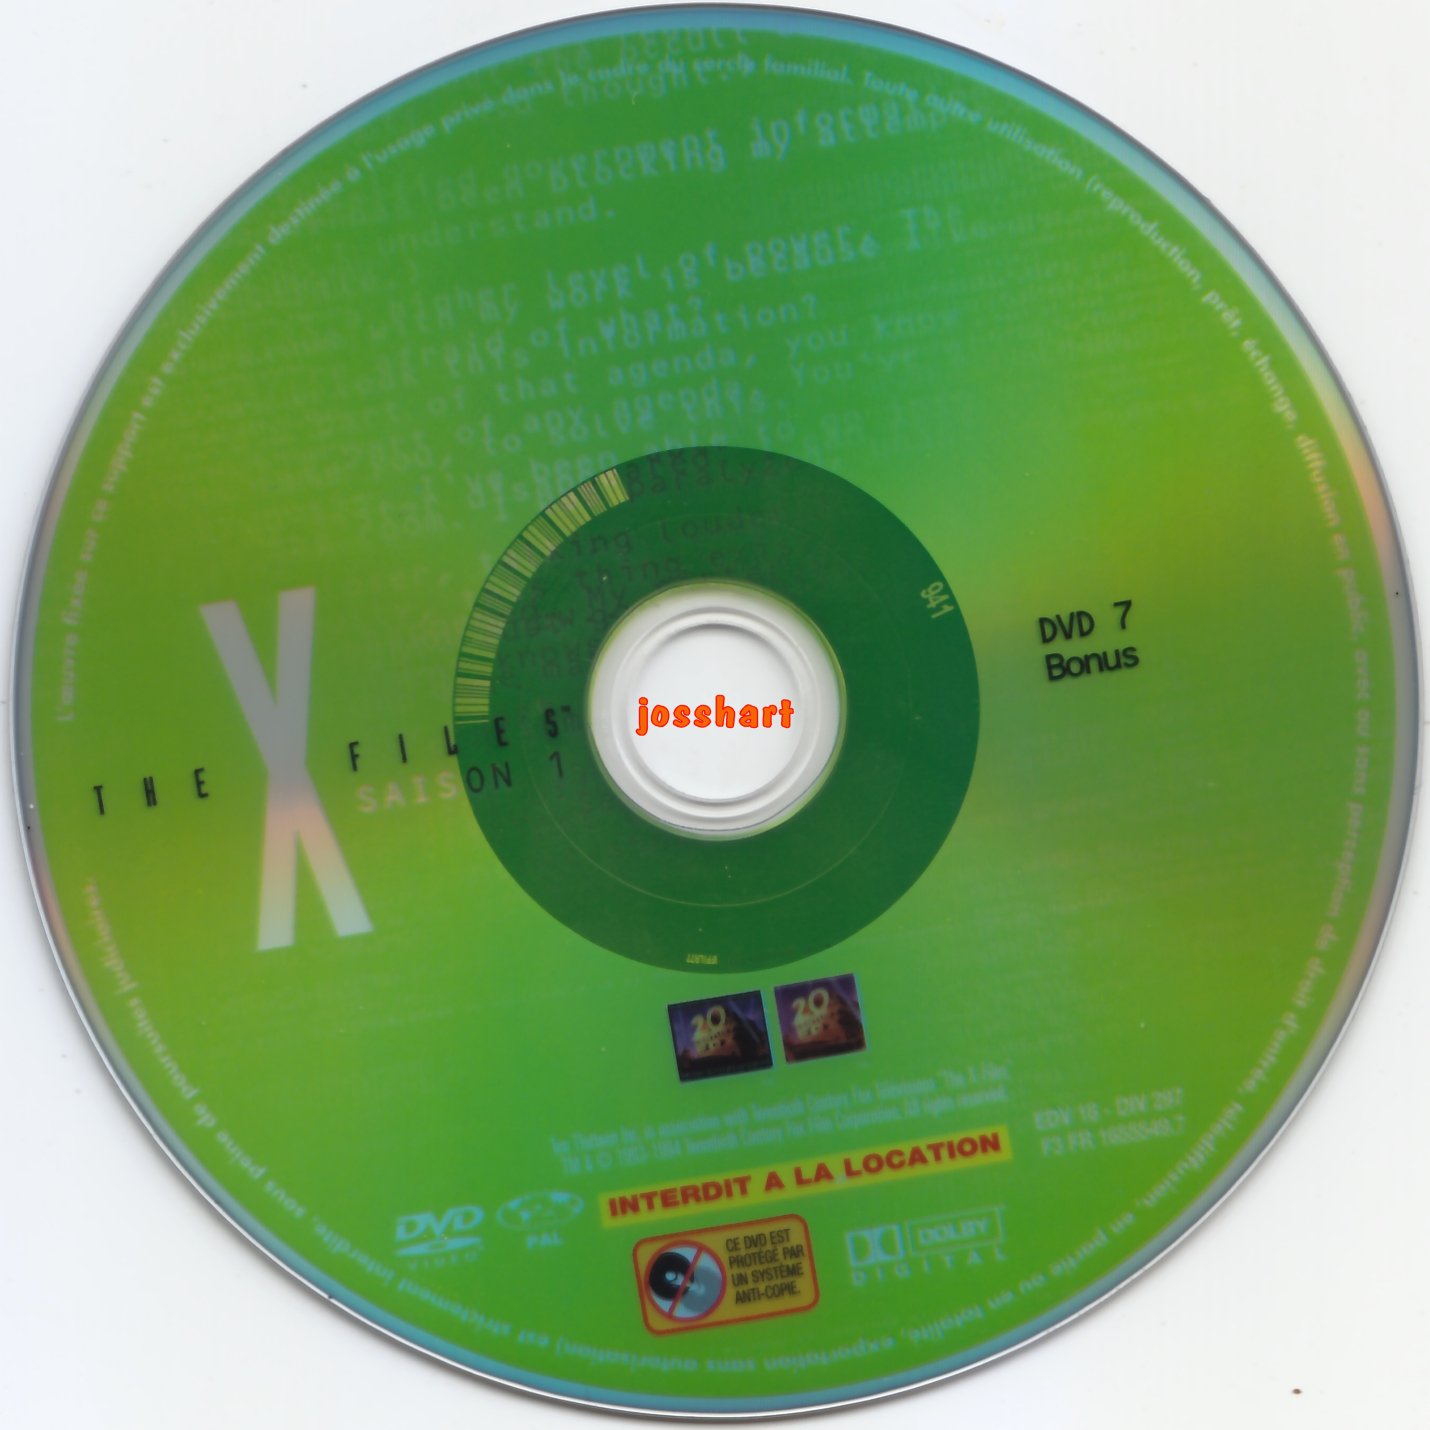 The X Files Saison 1 DVD 7 v2